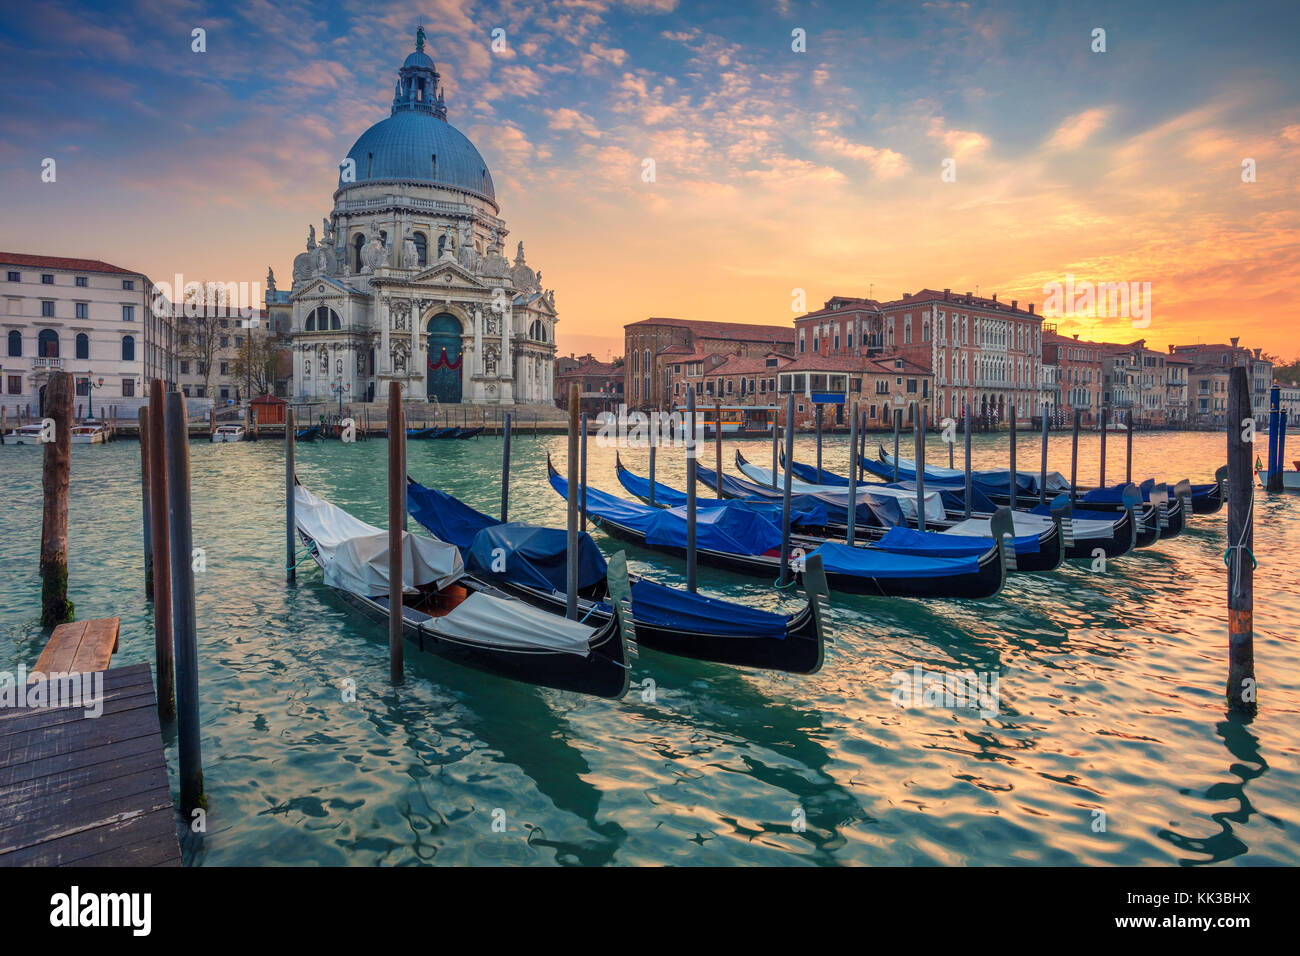 Venezia. cityscape immagine del Canal Grande di Venezia, con santa maria della salute basilica in background. Foto Stock